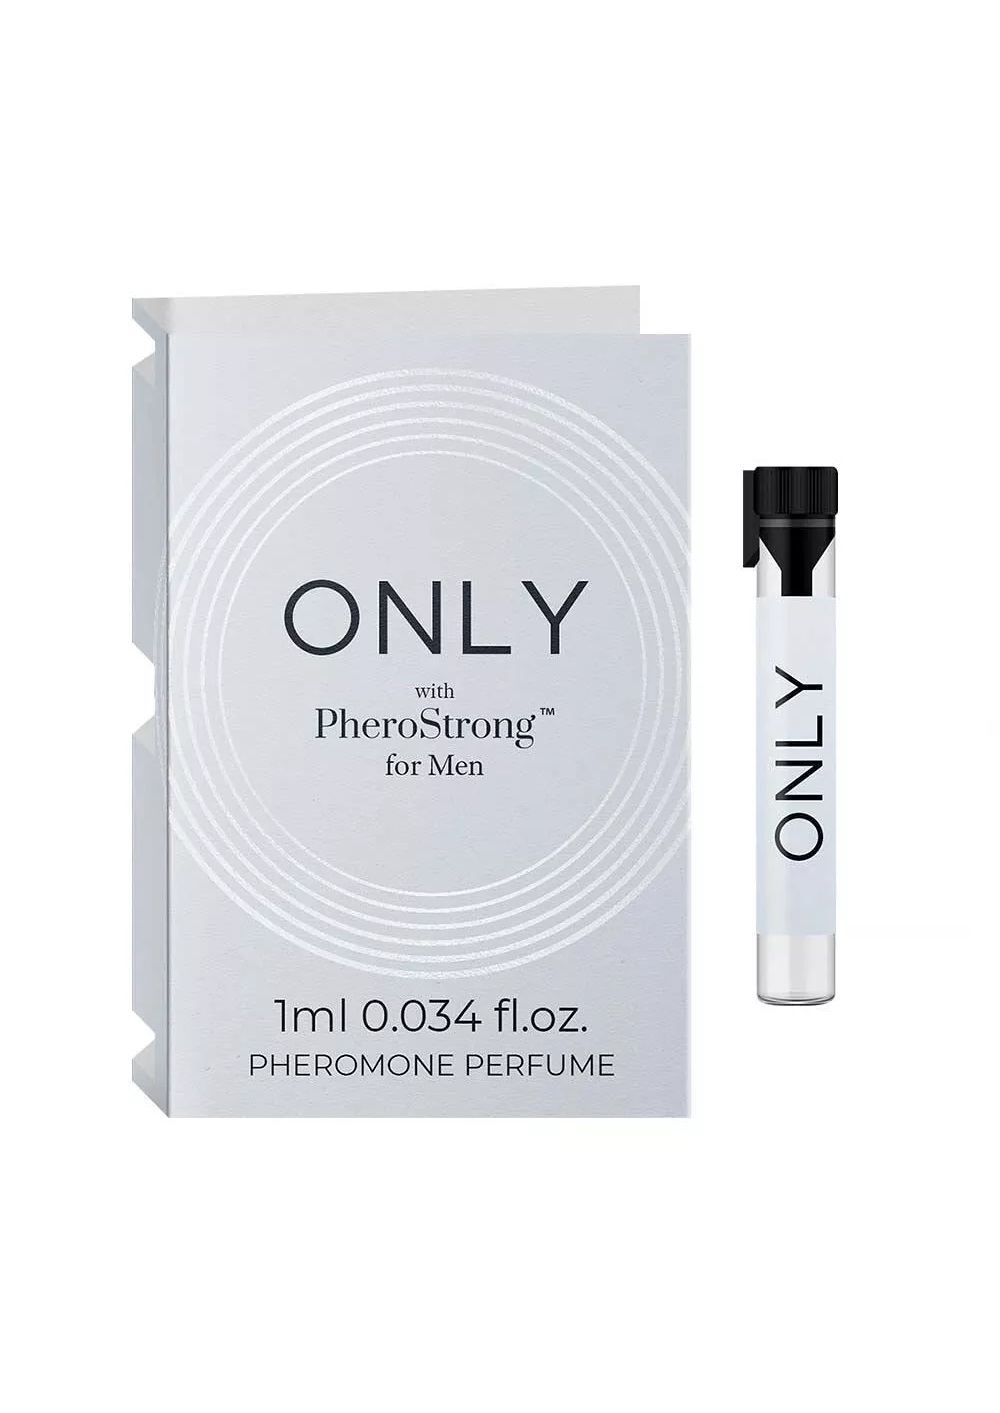 PheroStrong pheromone Only for Men - 1 ml.